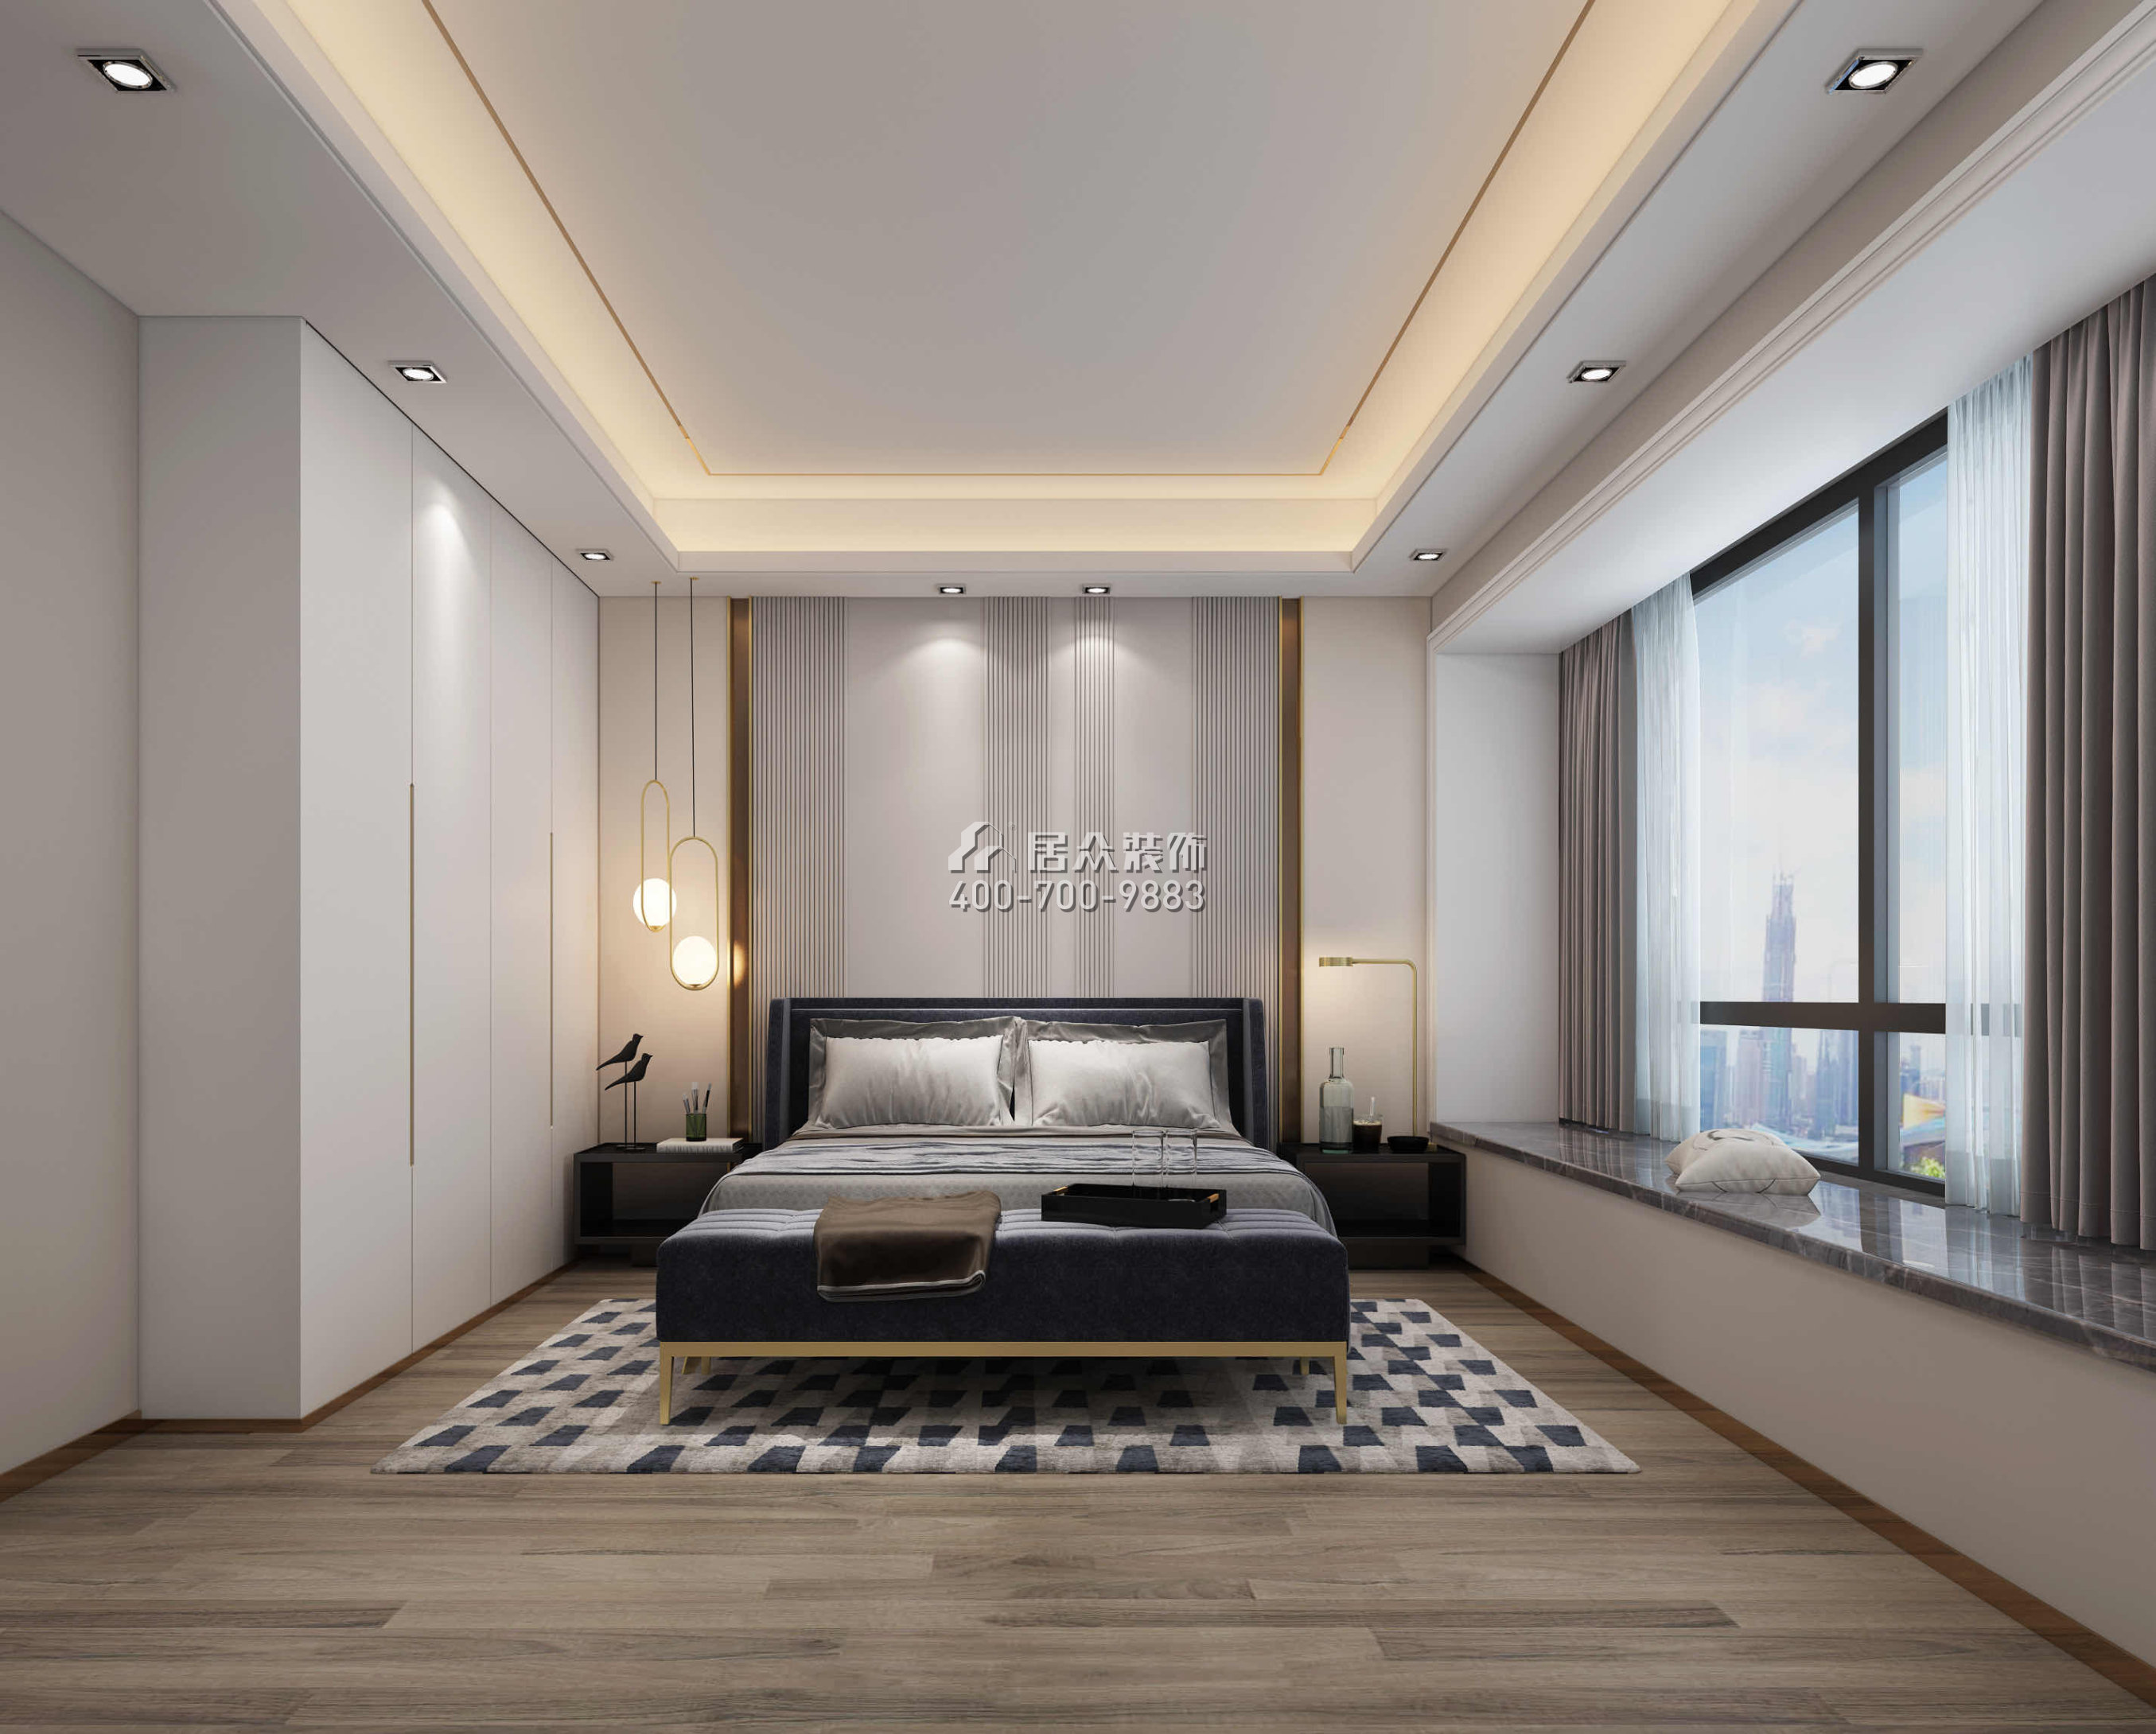 翠海花园220平方米现代简约风格平层户型卧室装修效果图